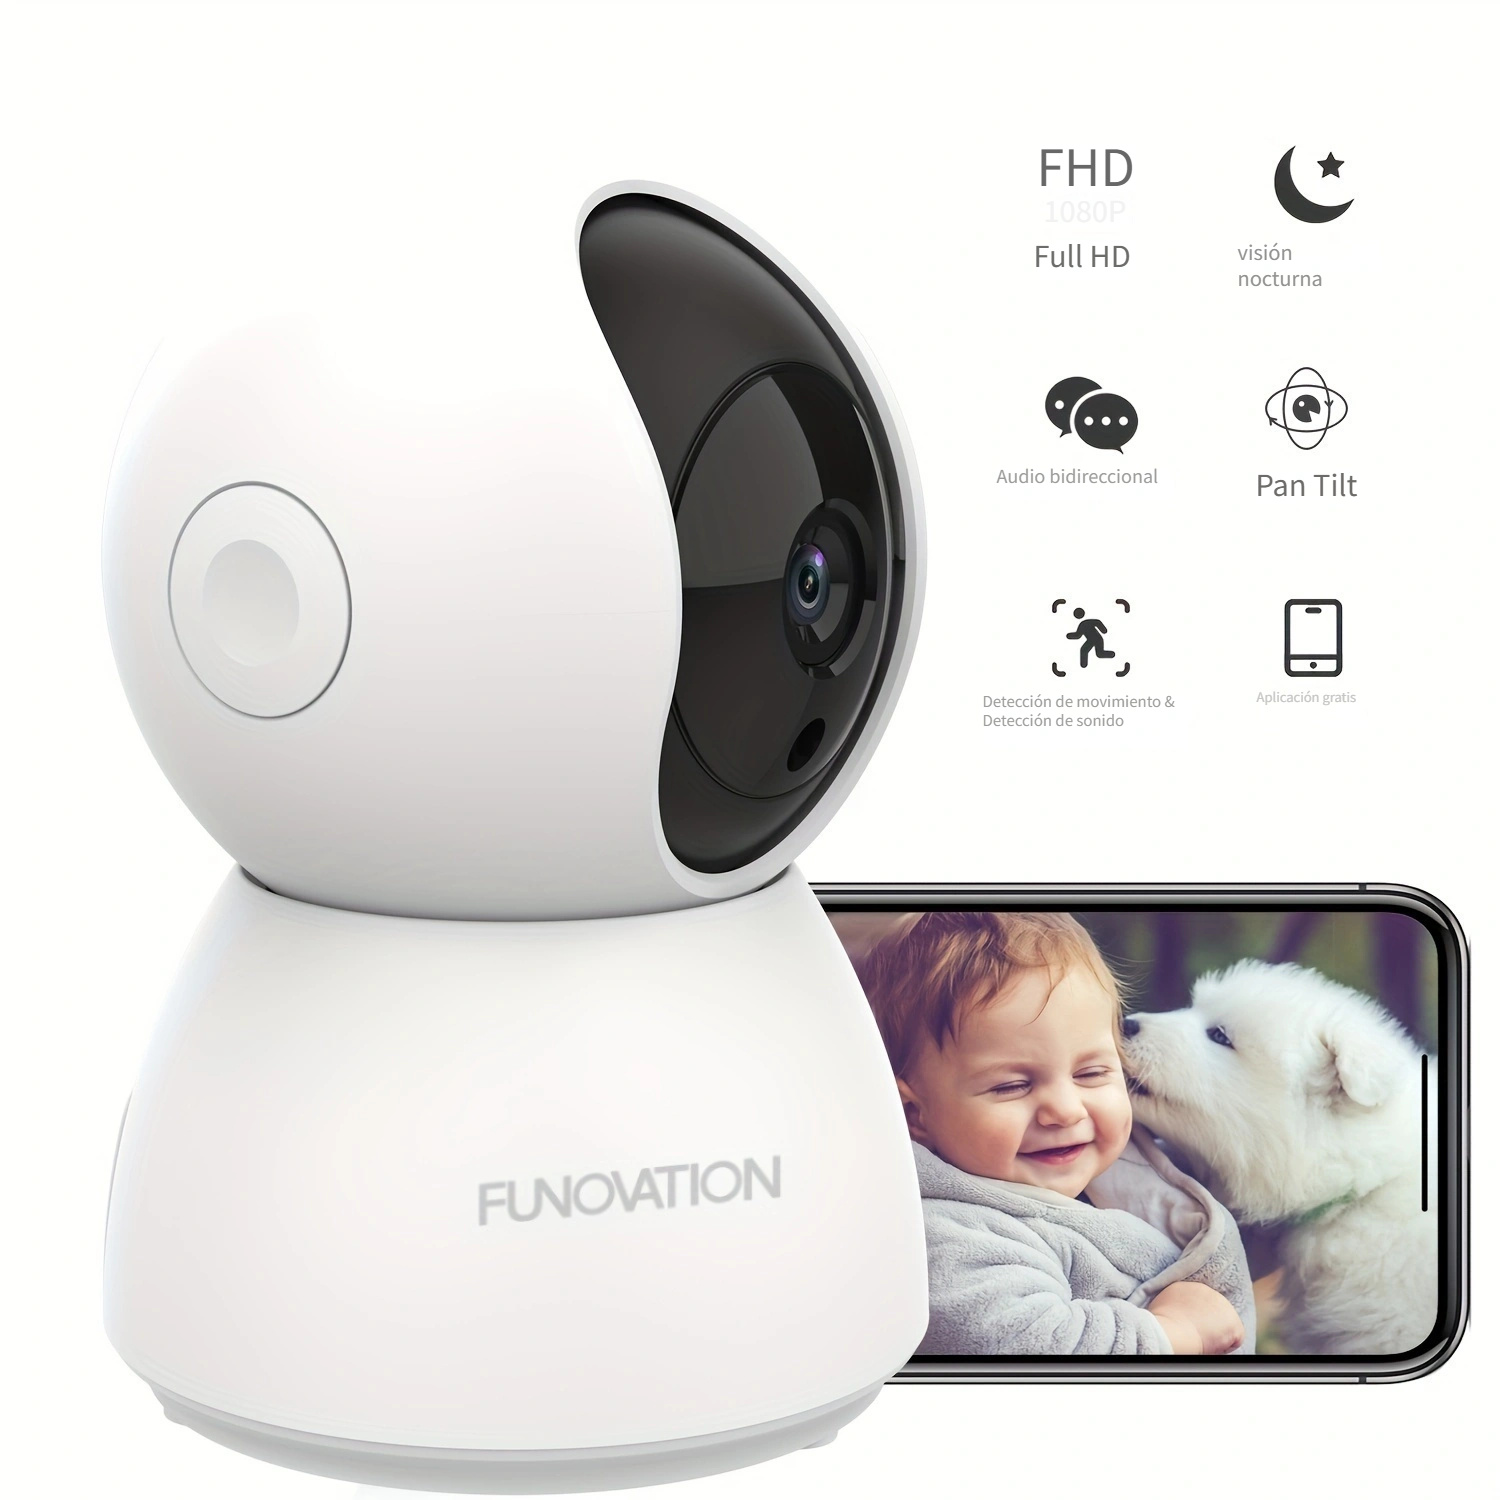 Cámara de seguridad Xiaomi Mi 360° home security camera 2K con resolución  de 3MP visión nocturna incluida blanca